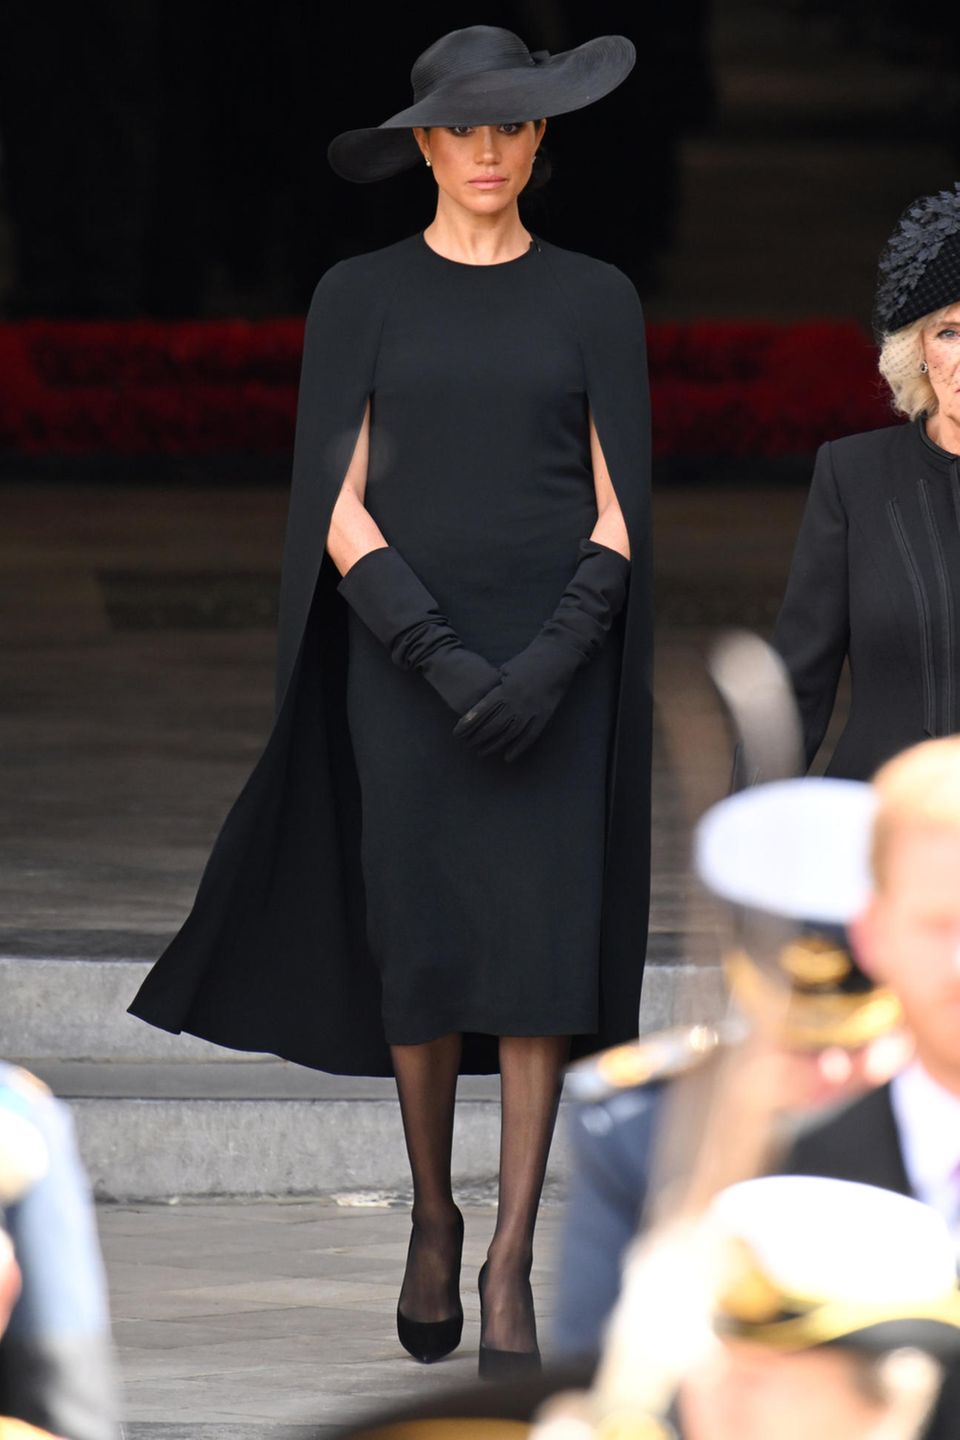 Herzogin Meghan trifft bei der Beerdigung von Queen Elizabeth ein. Die Frau von Prinz Harry trägt ein Cape-Dress von Stella McCartney in Midilänge, dazu eine schwarze Strumpfhose sowie einen schwarzen Hut von Dior. Um ihre Arme zu bedecken, greift Meghan in der Kirche zu langen schwarzen Handschuhen.